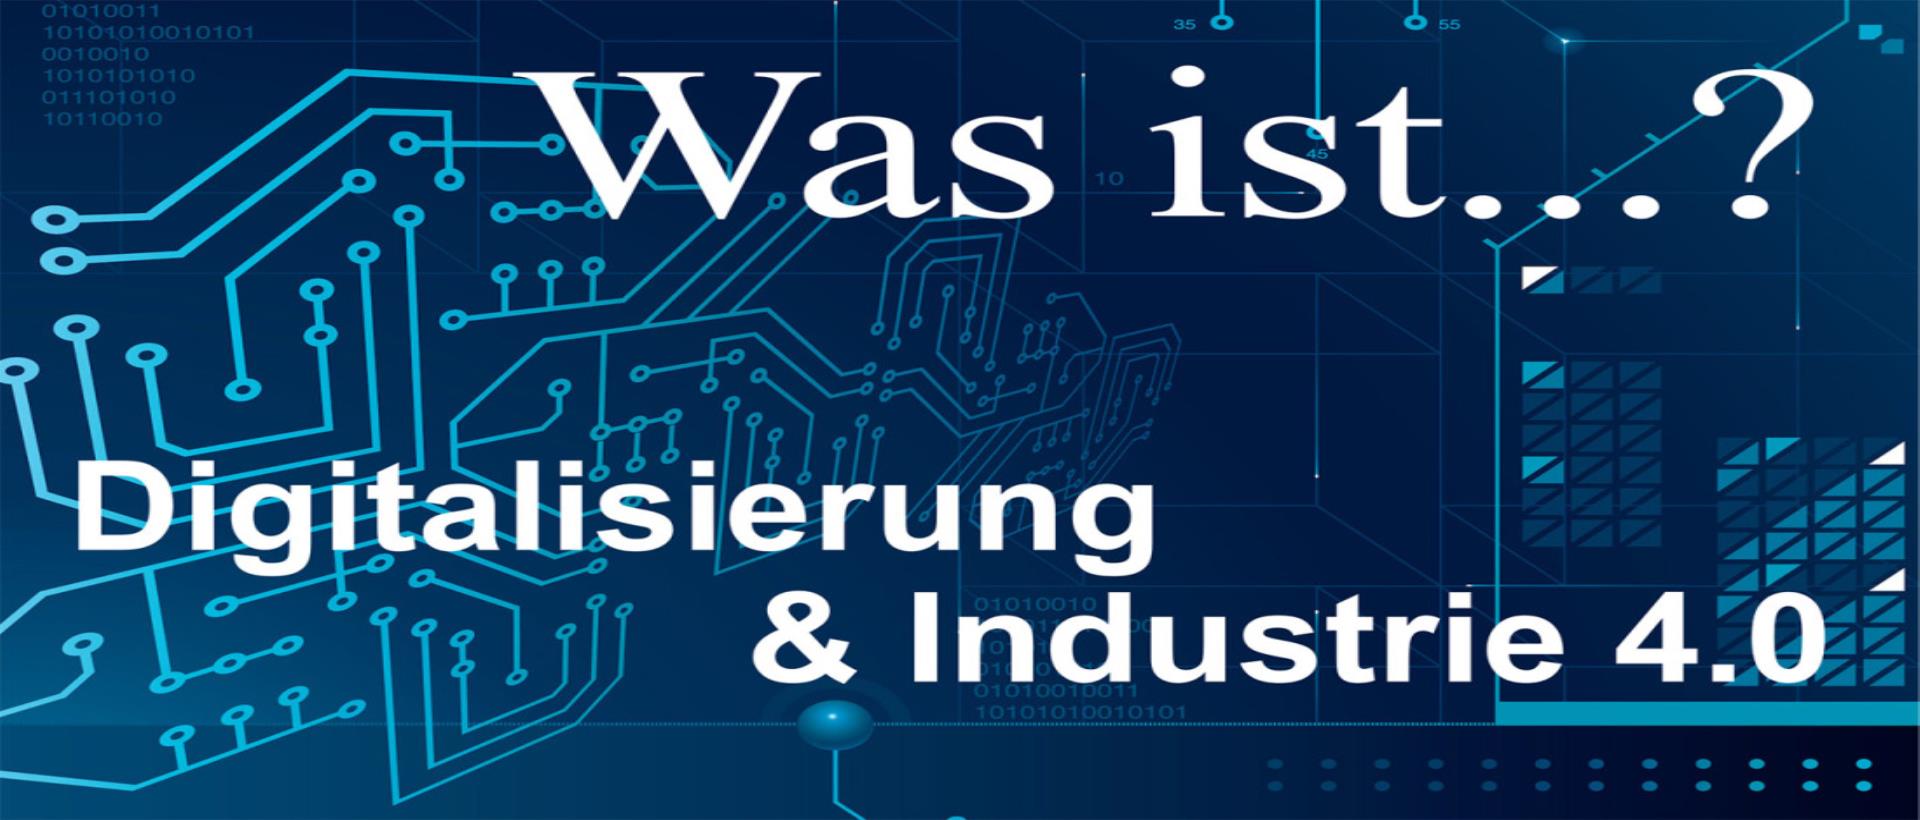 Digitalisierung der KMU in Deutschland!